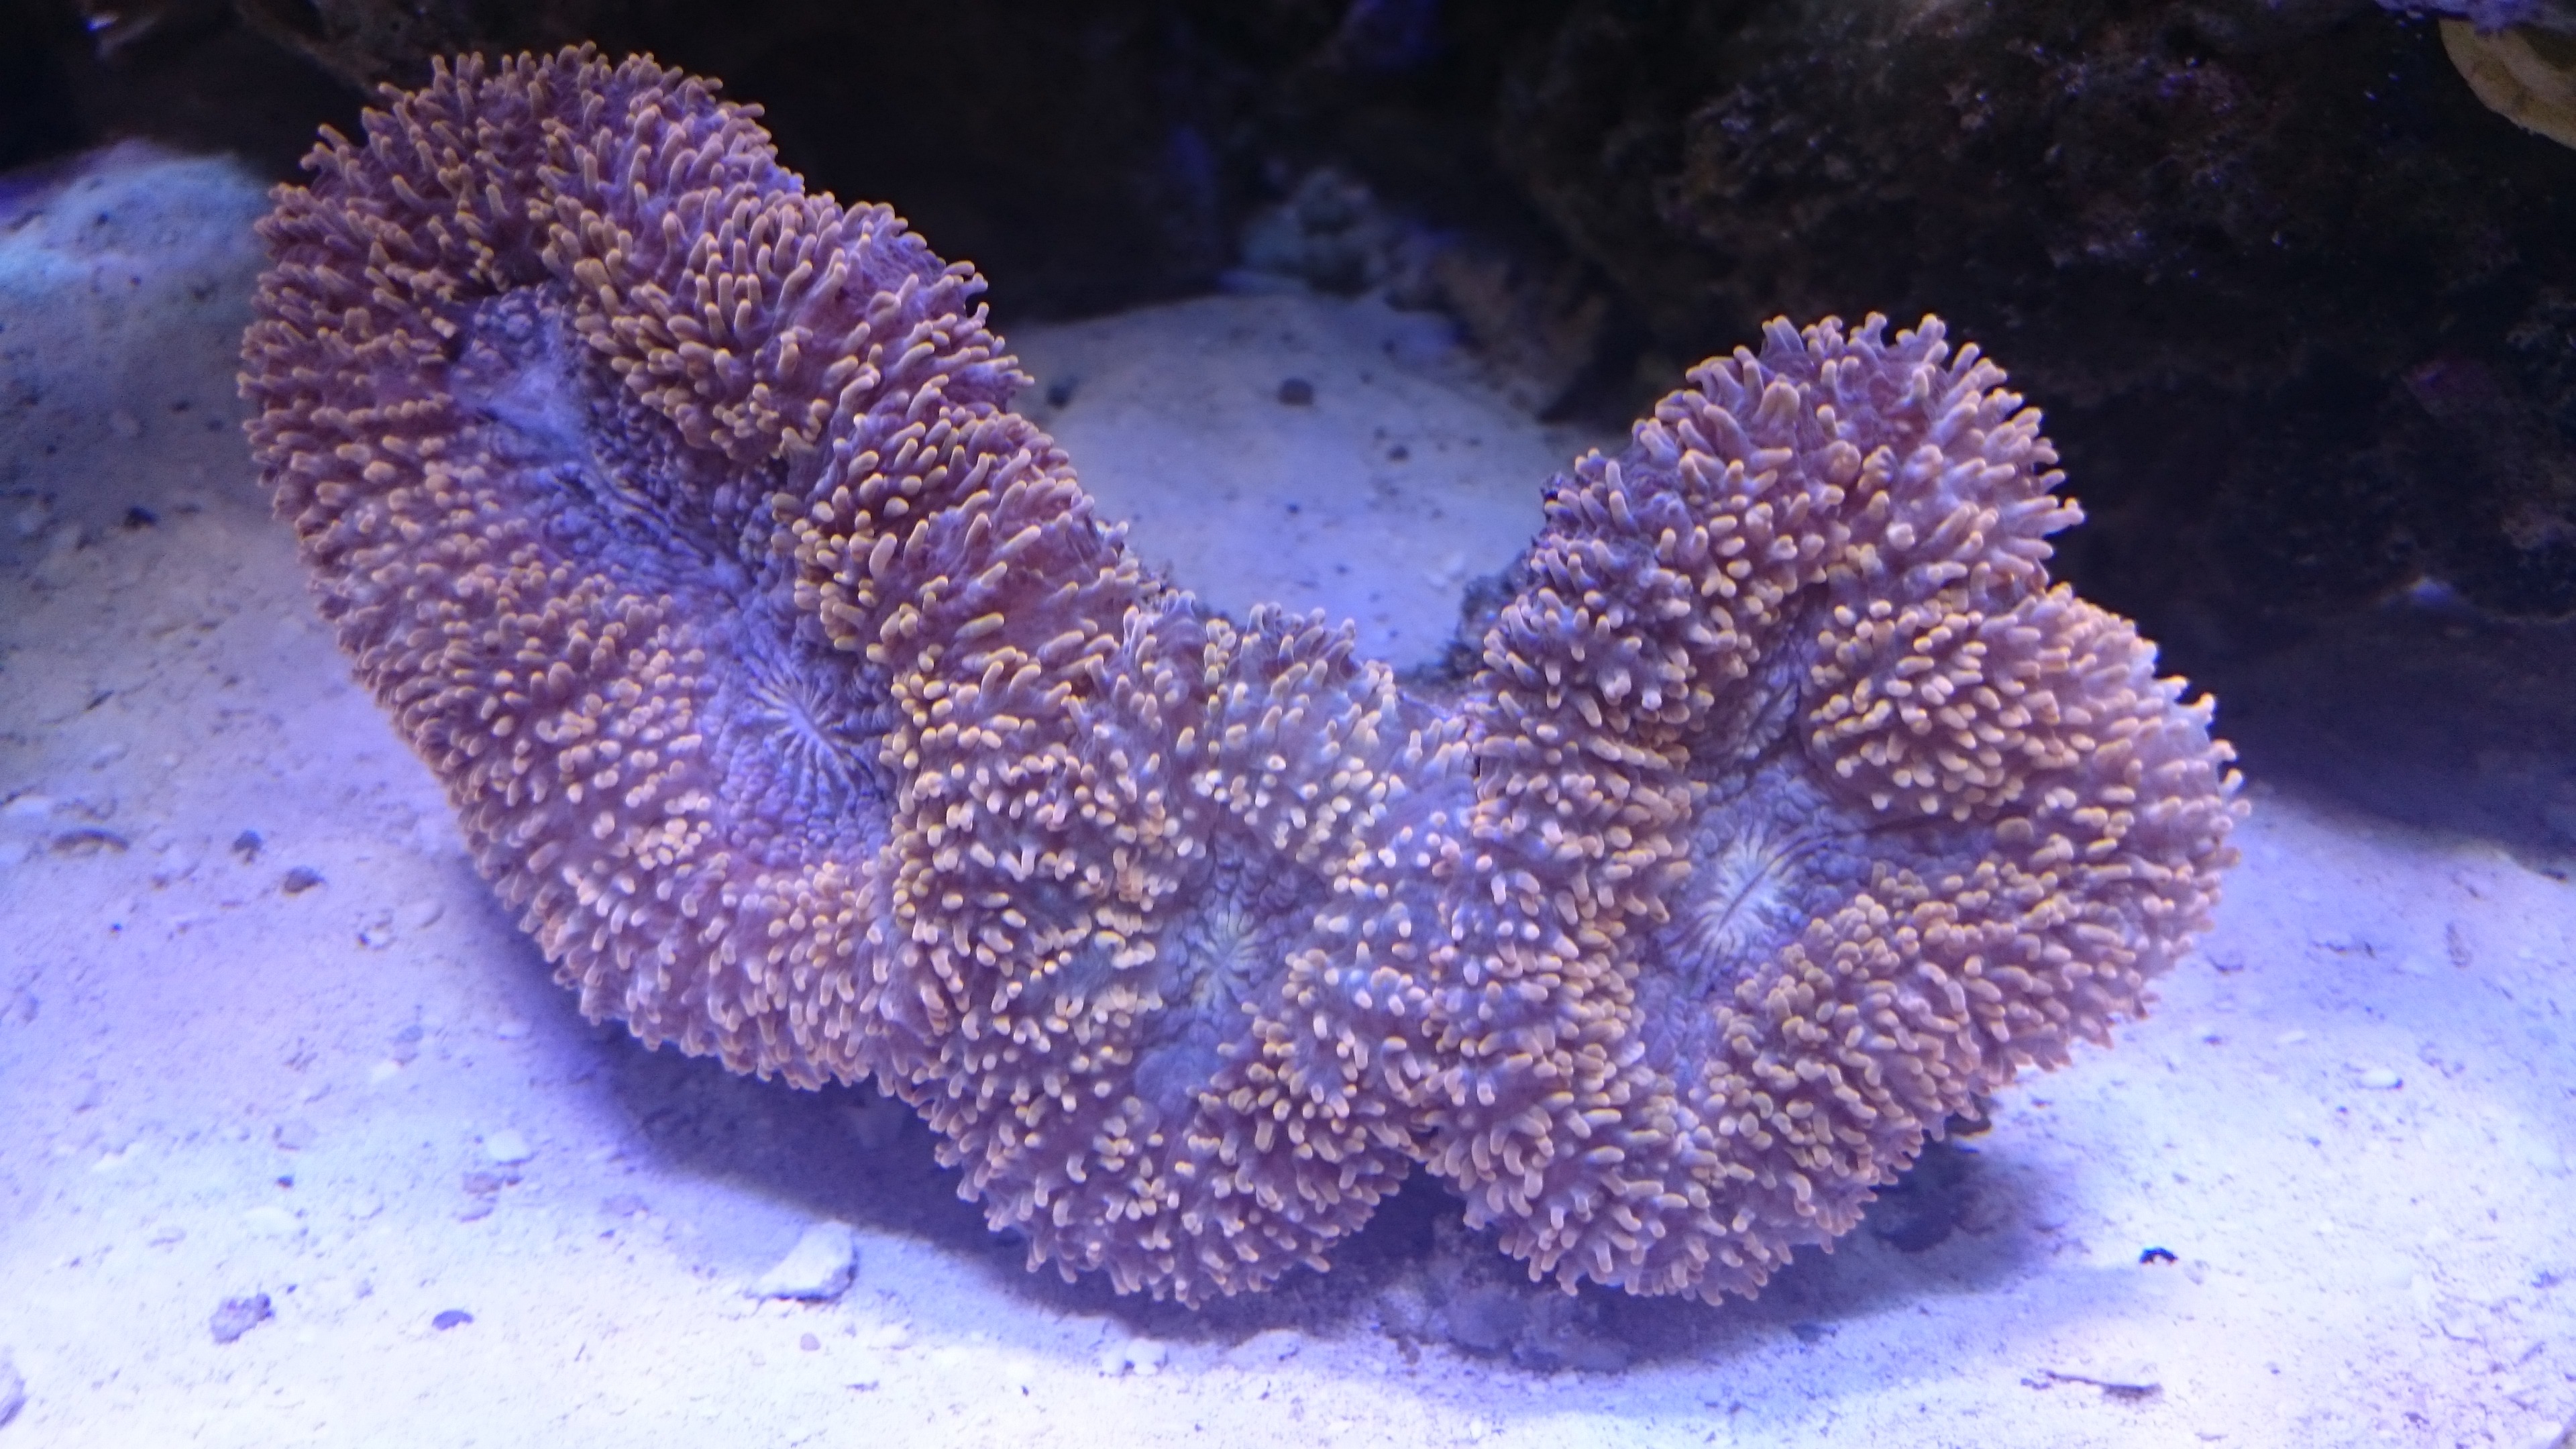 recordia coral